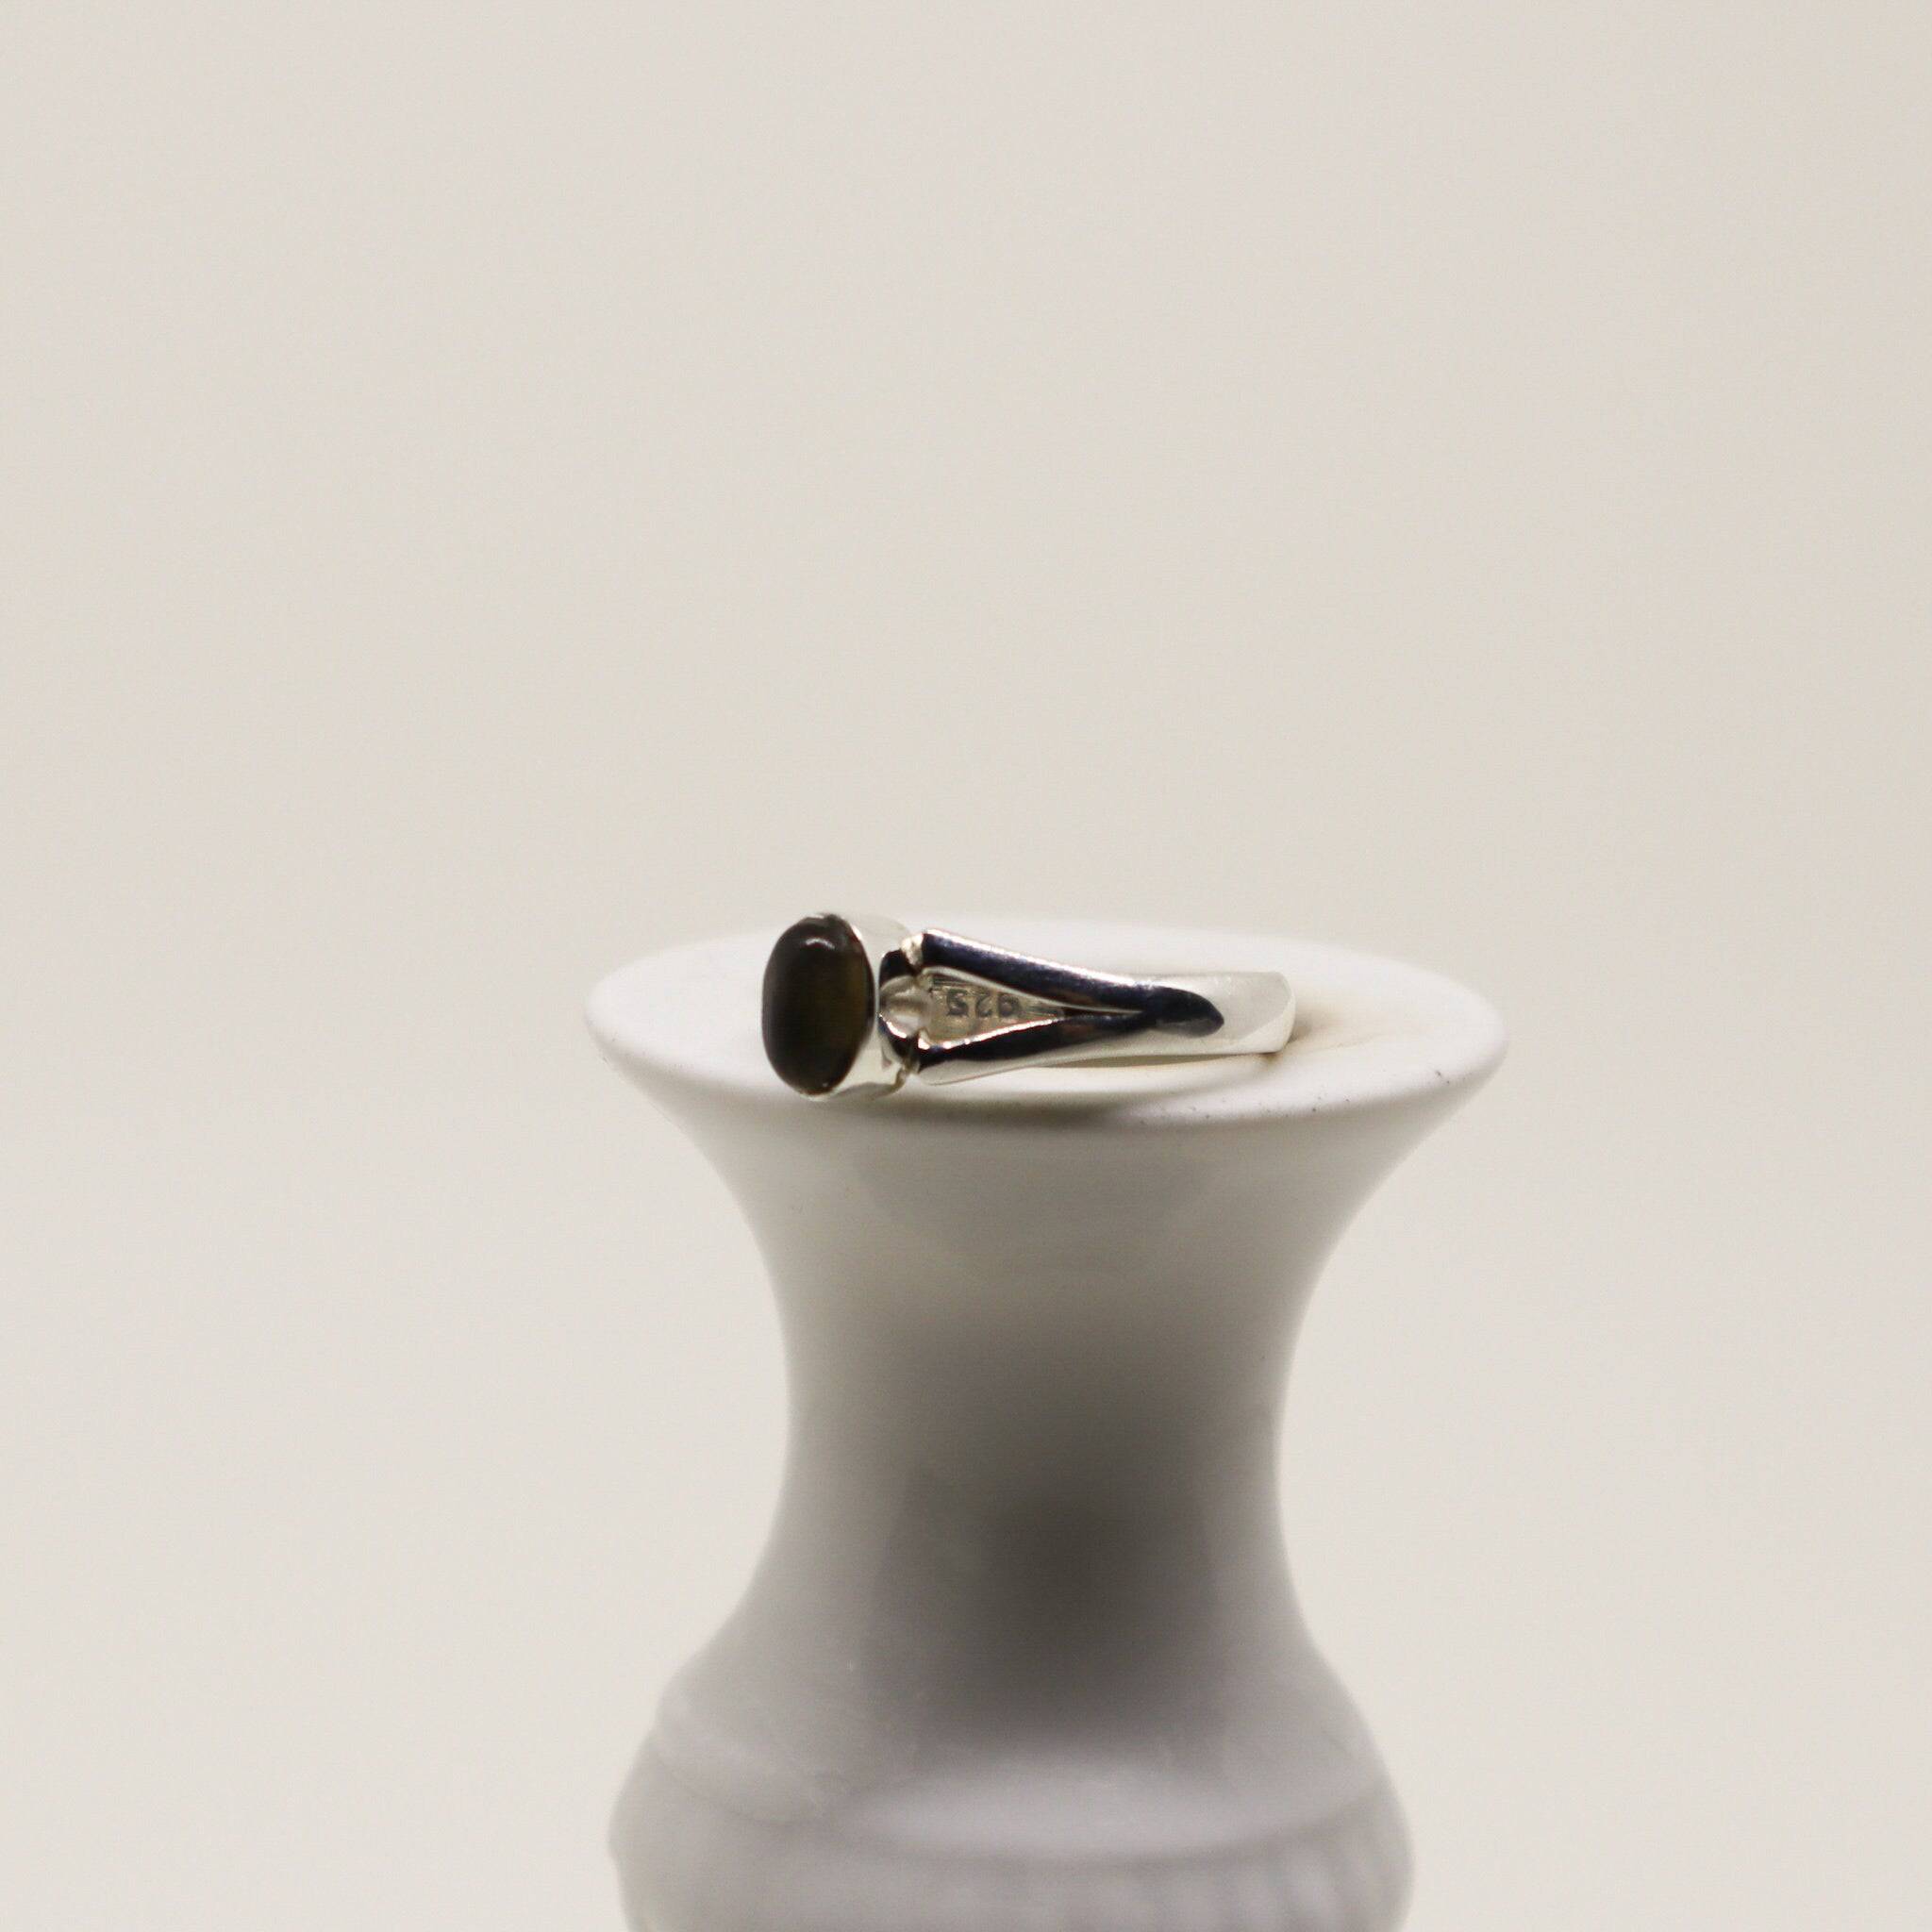 Kleiner Labradorit Ring mit ovalem Stein 925 Sterling Silber handgemacht - NooeBerlin